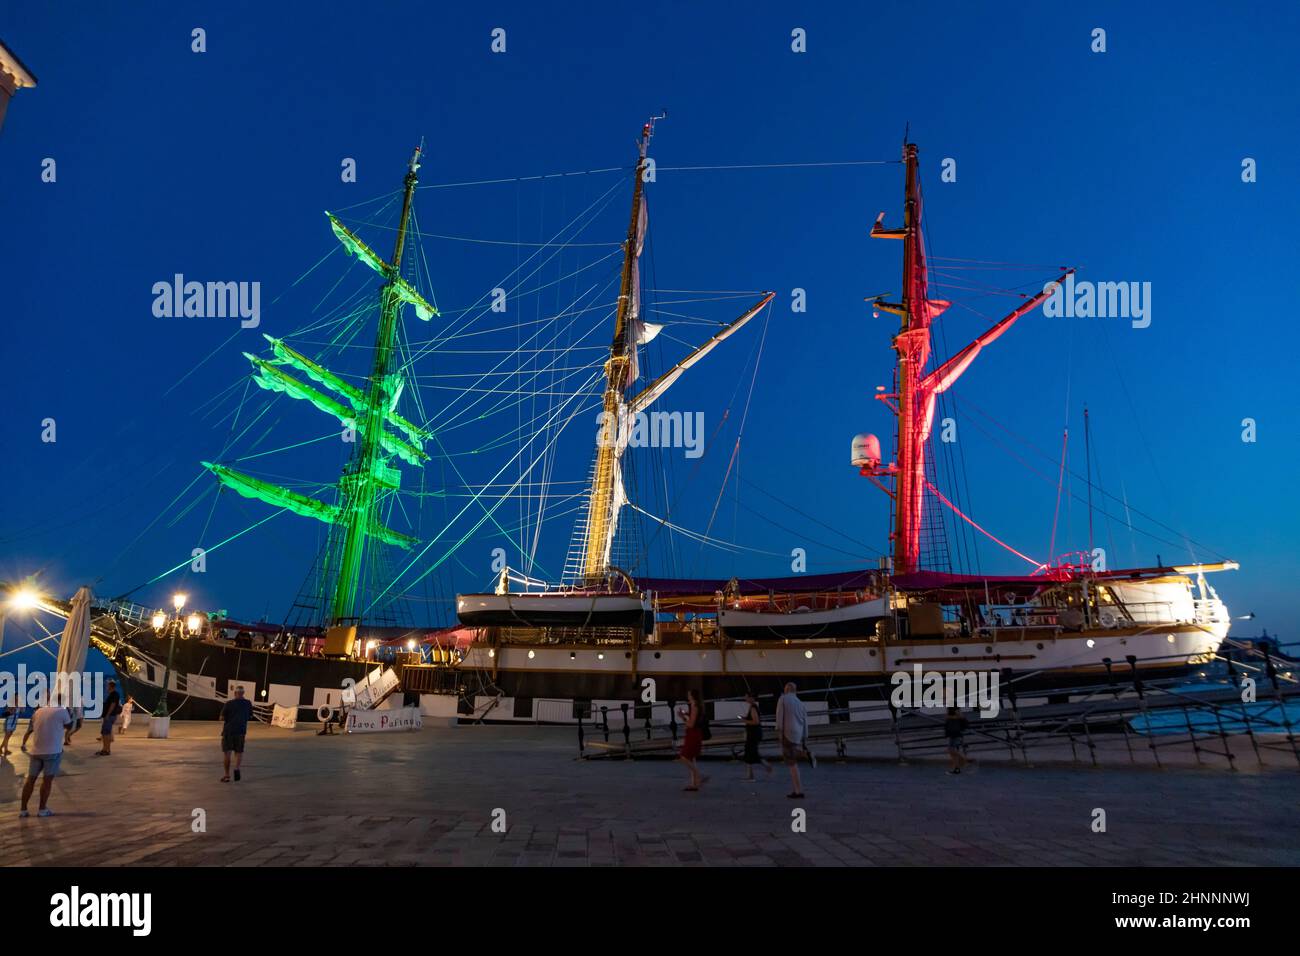 Das italienische Marineschiff Palinuro ankern am Tag am Pier von Venedig im Arsenal-Gebiet, der Gipfel von G20 findet in diesem Gebiet statt. Das Schiff ist mit italienischen Flaggen-Farben beleuchtet Stockfoto